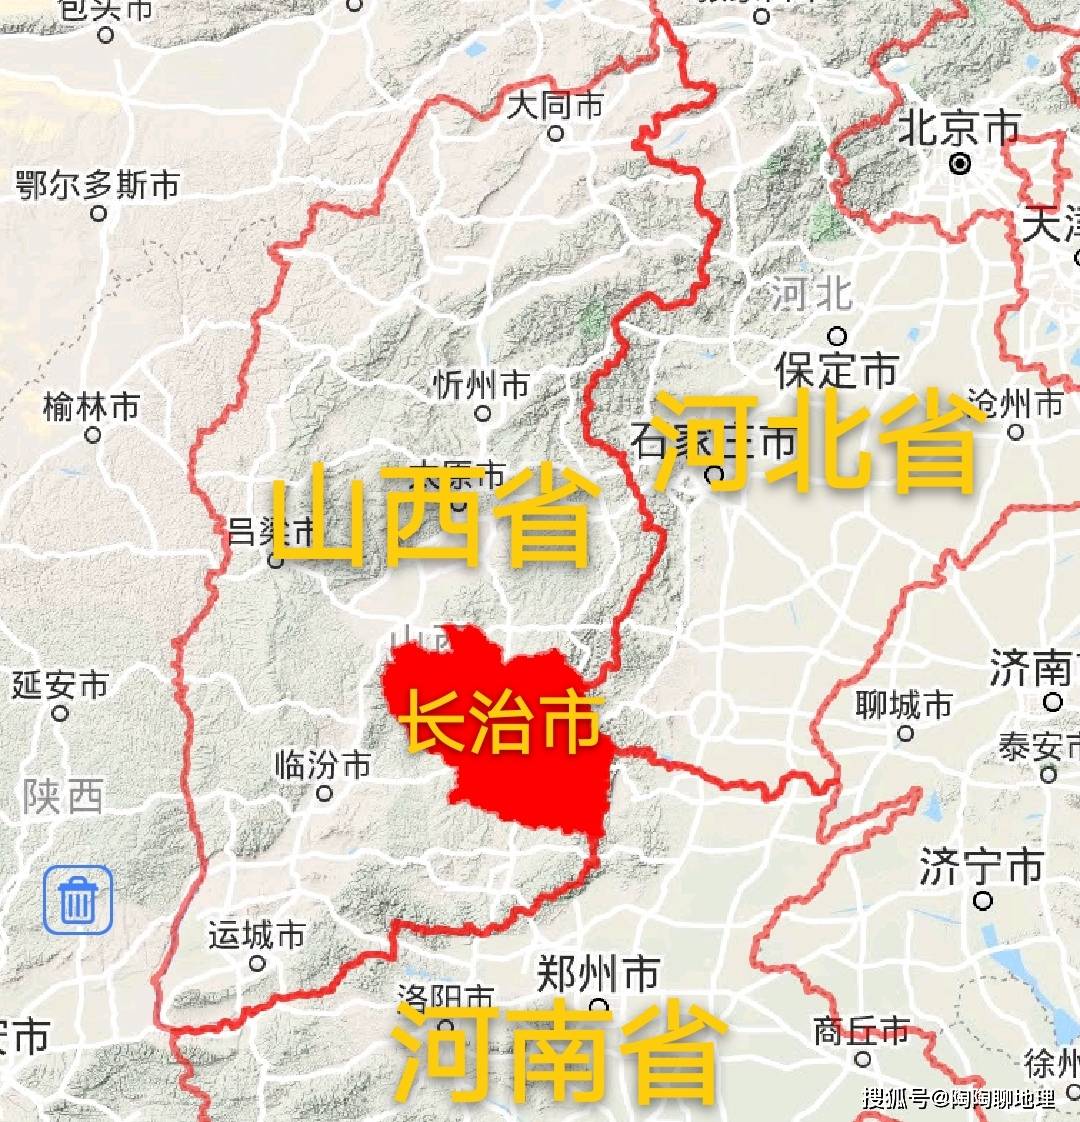 原创长治市建成区面积排名,潞州区最大,平顺县最小,来了解一下?